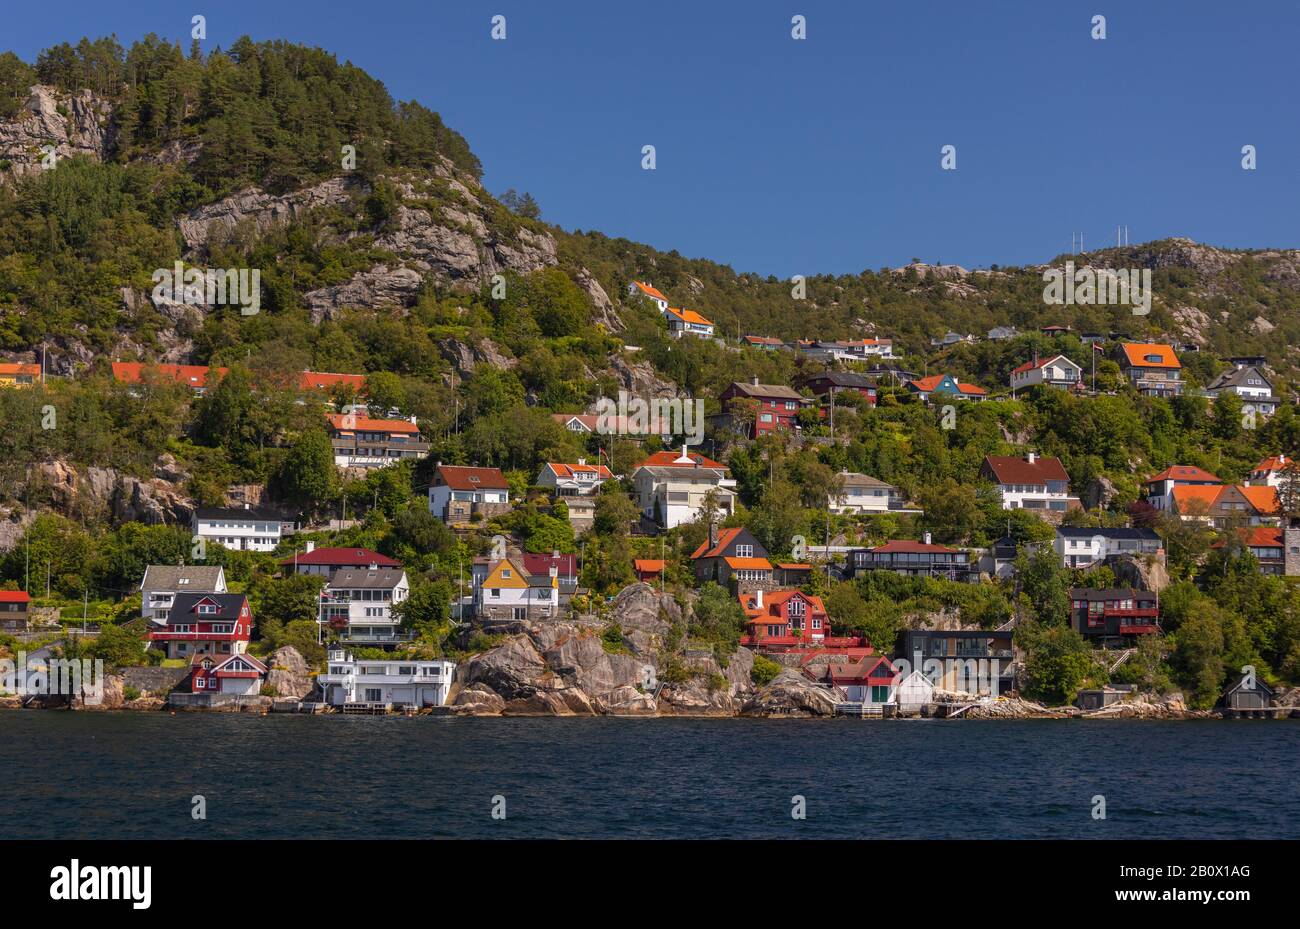 Bergen, NORWEGEN - Sandviken Viertel am Wasser Häuser, Byfjorden Fjord, nördlich des Vagen Harbour. Stockfoto